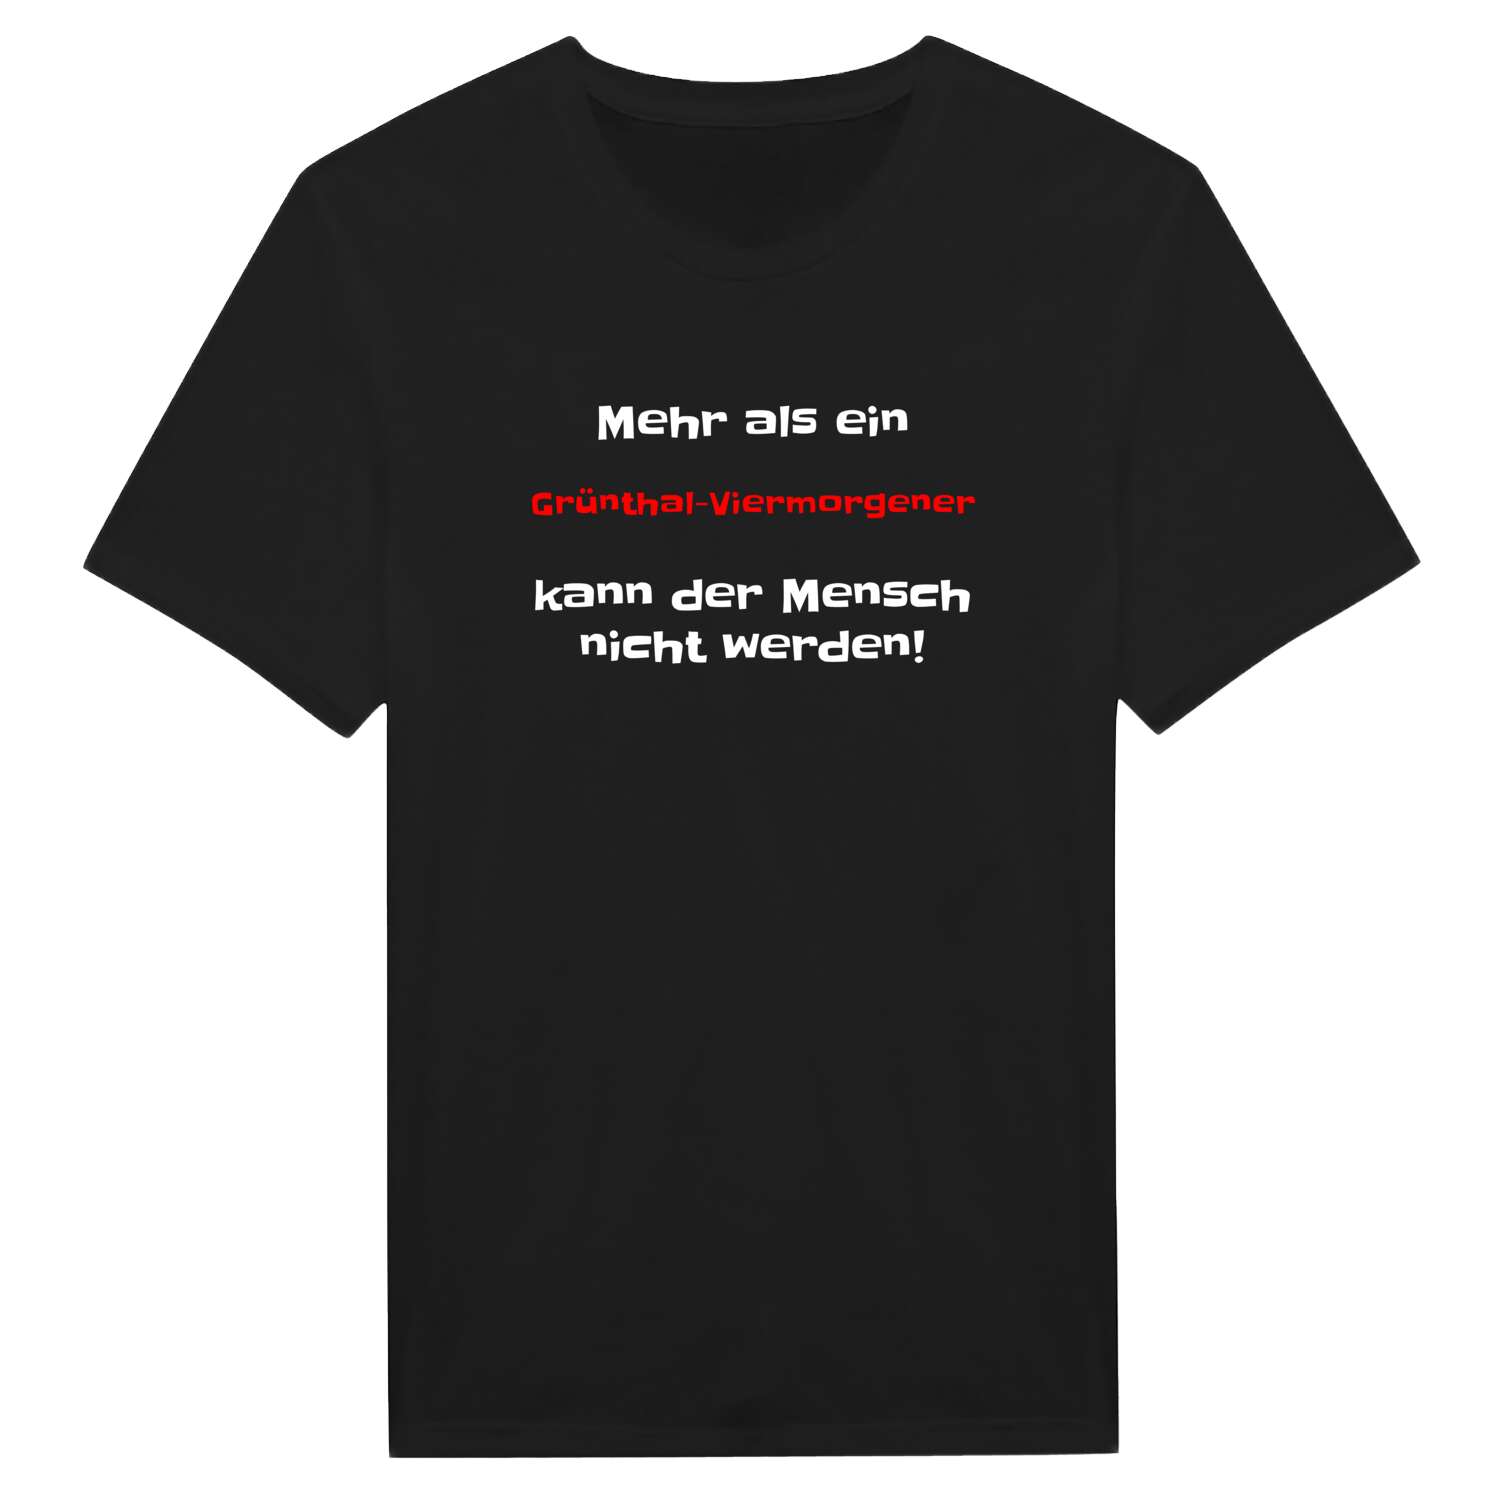 Grünthal-Viermorgen T-Shirt »Mehr als ein«